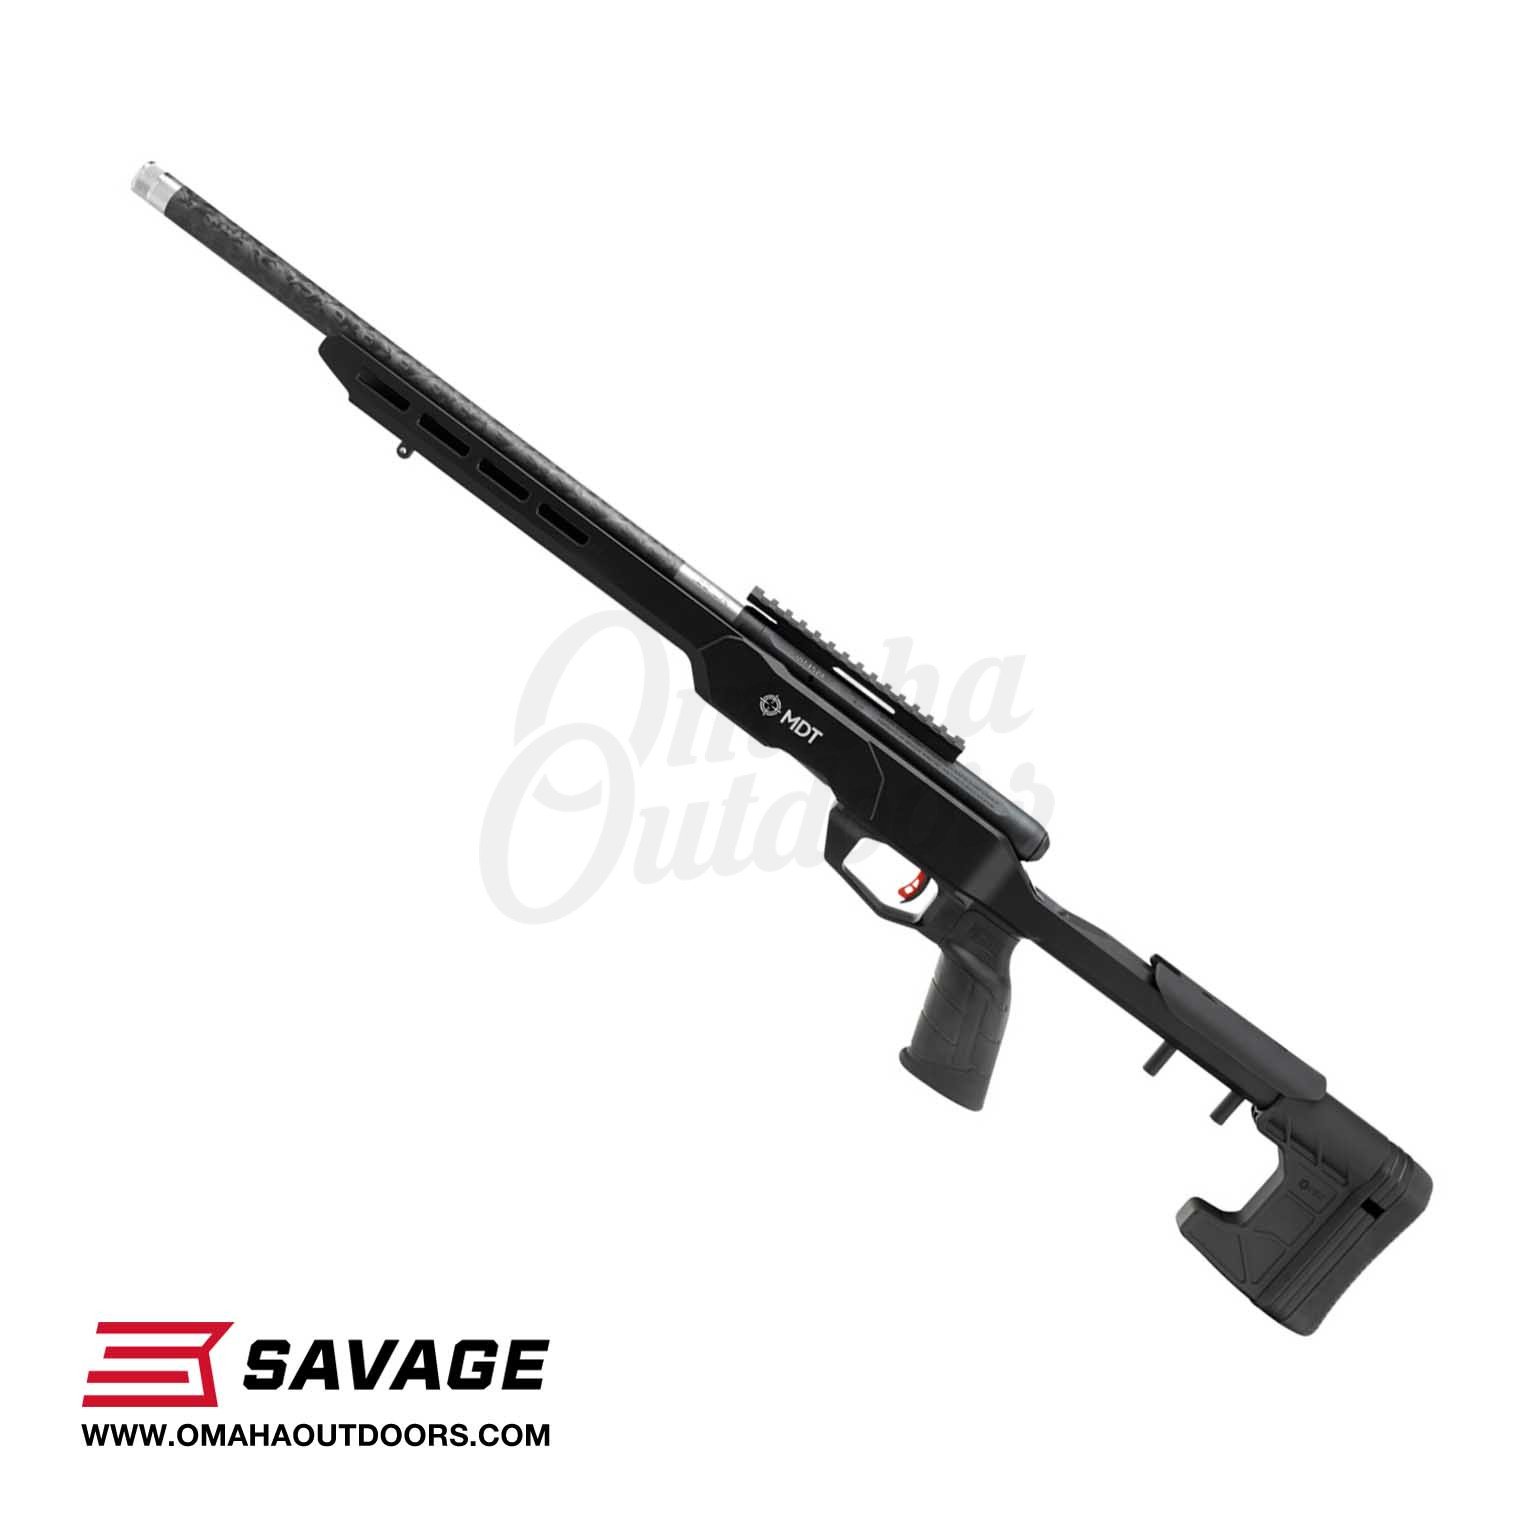 Carabine SAVAGE B22 Précision Calibre 22 lr